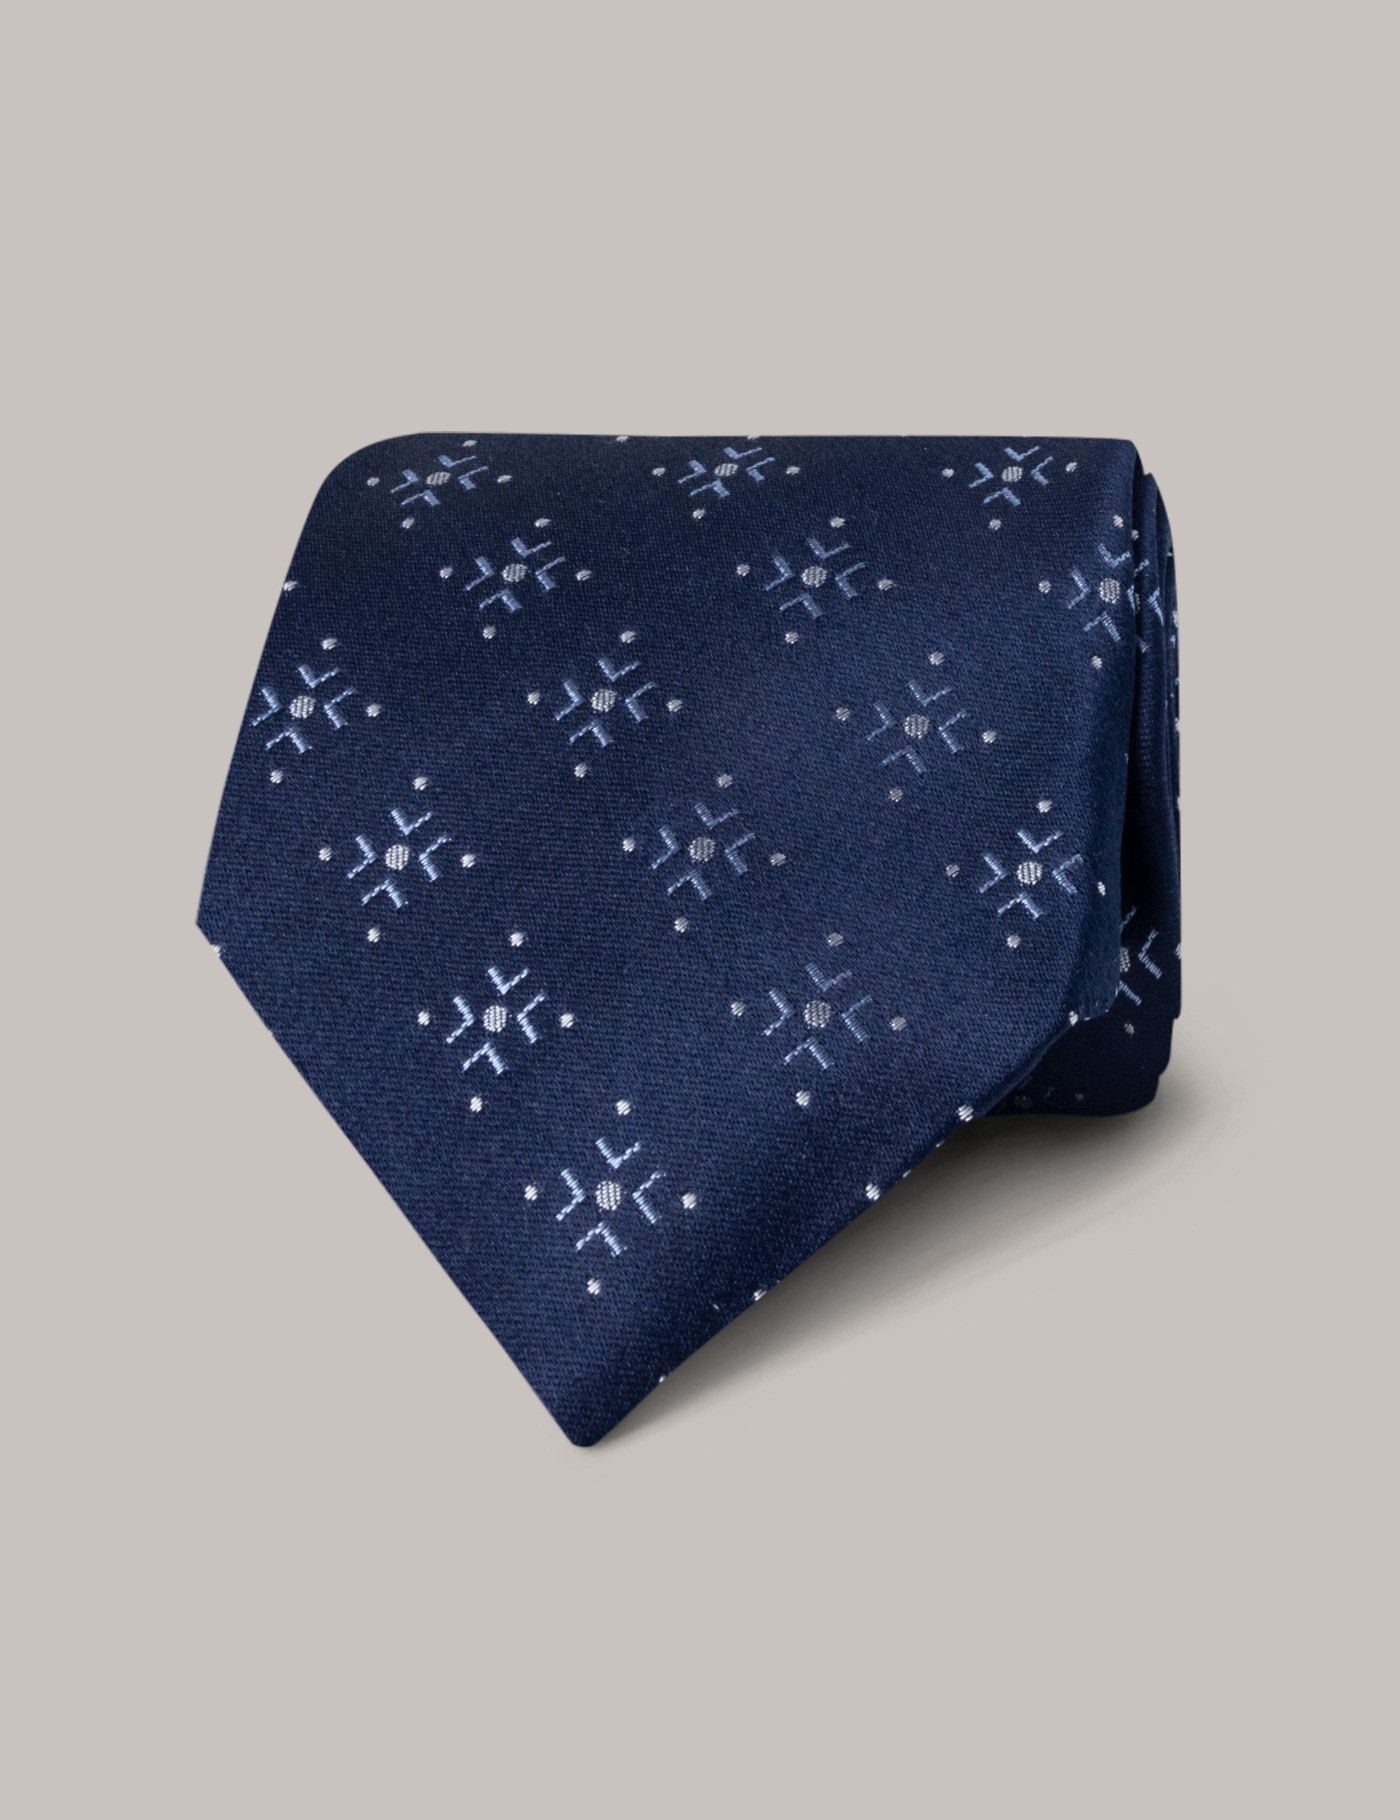 hawes & curtis navy geo foulard tie - 100% silk